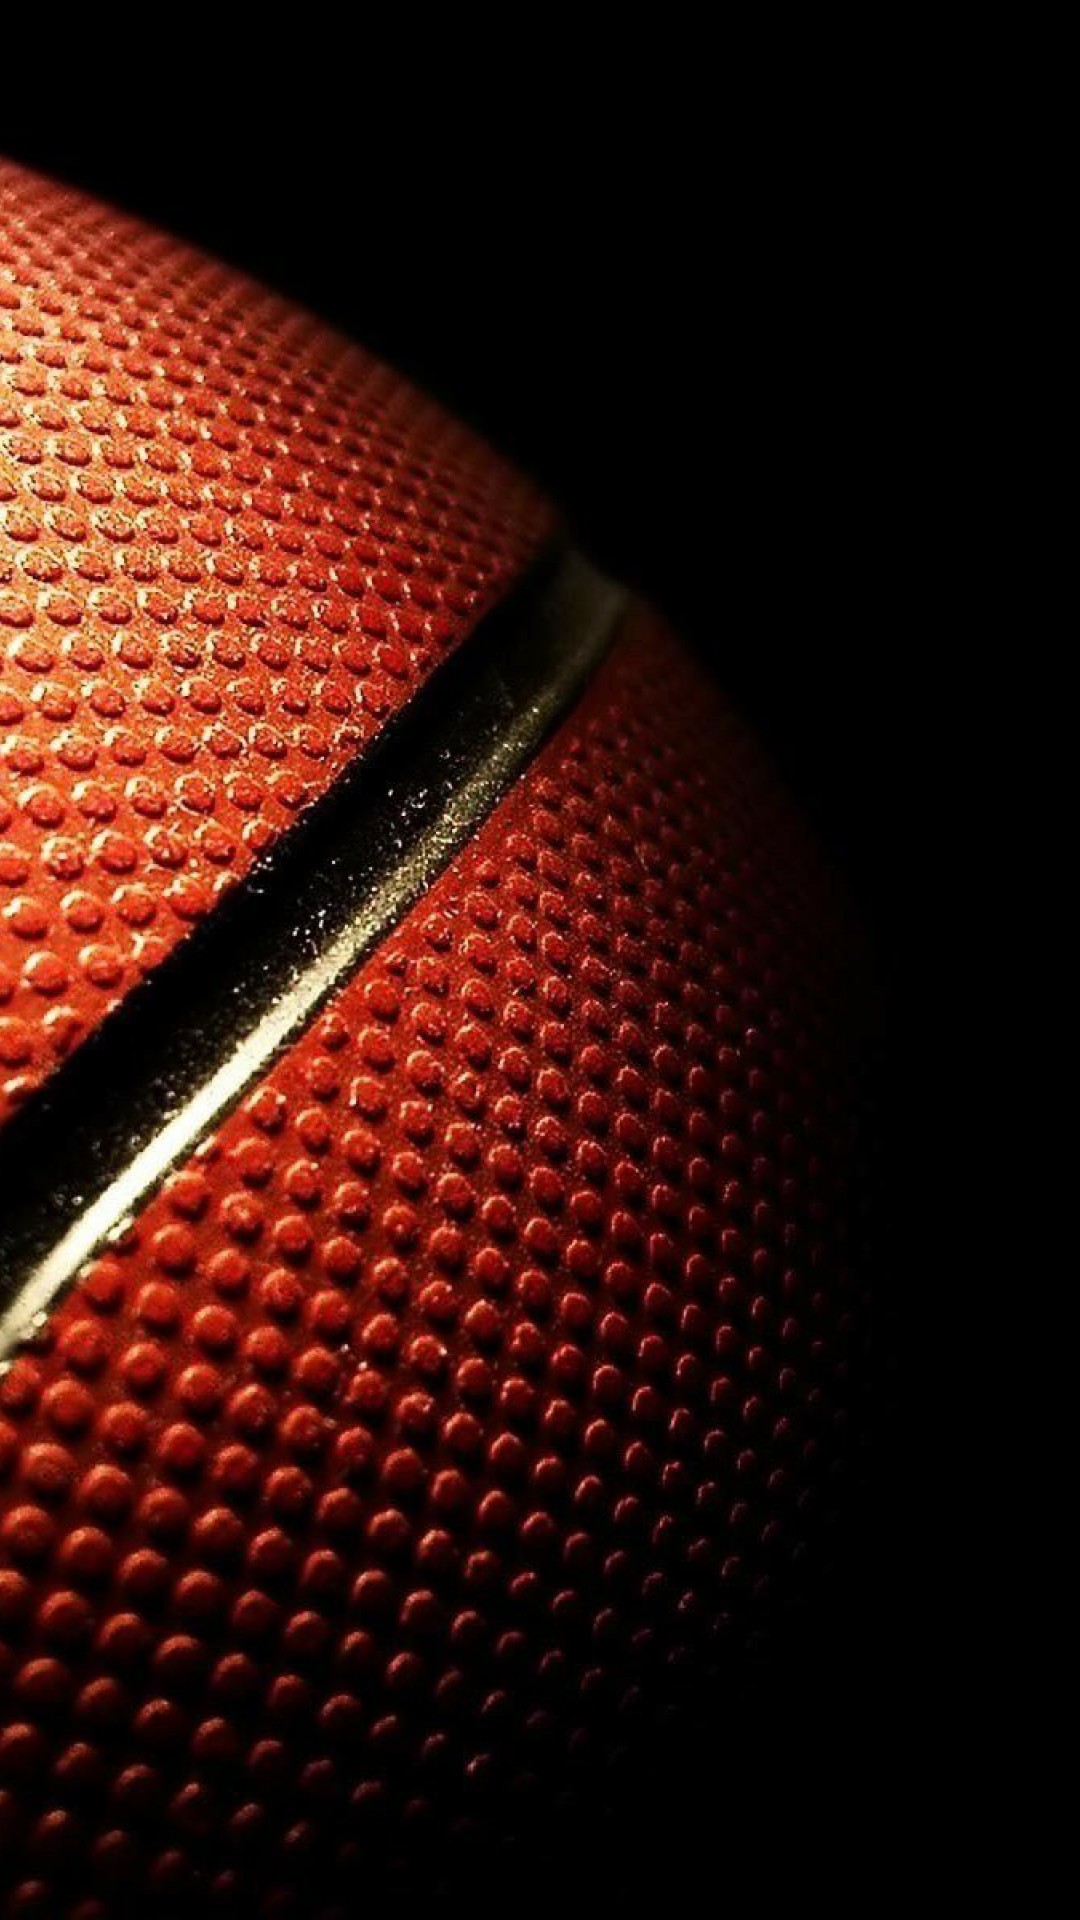 1080x1920 Best 25 Wallpaper basketball ideas on Pinterest